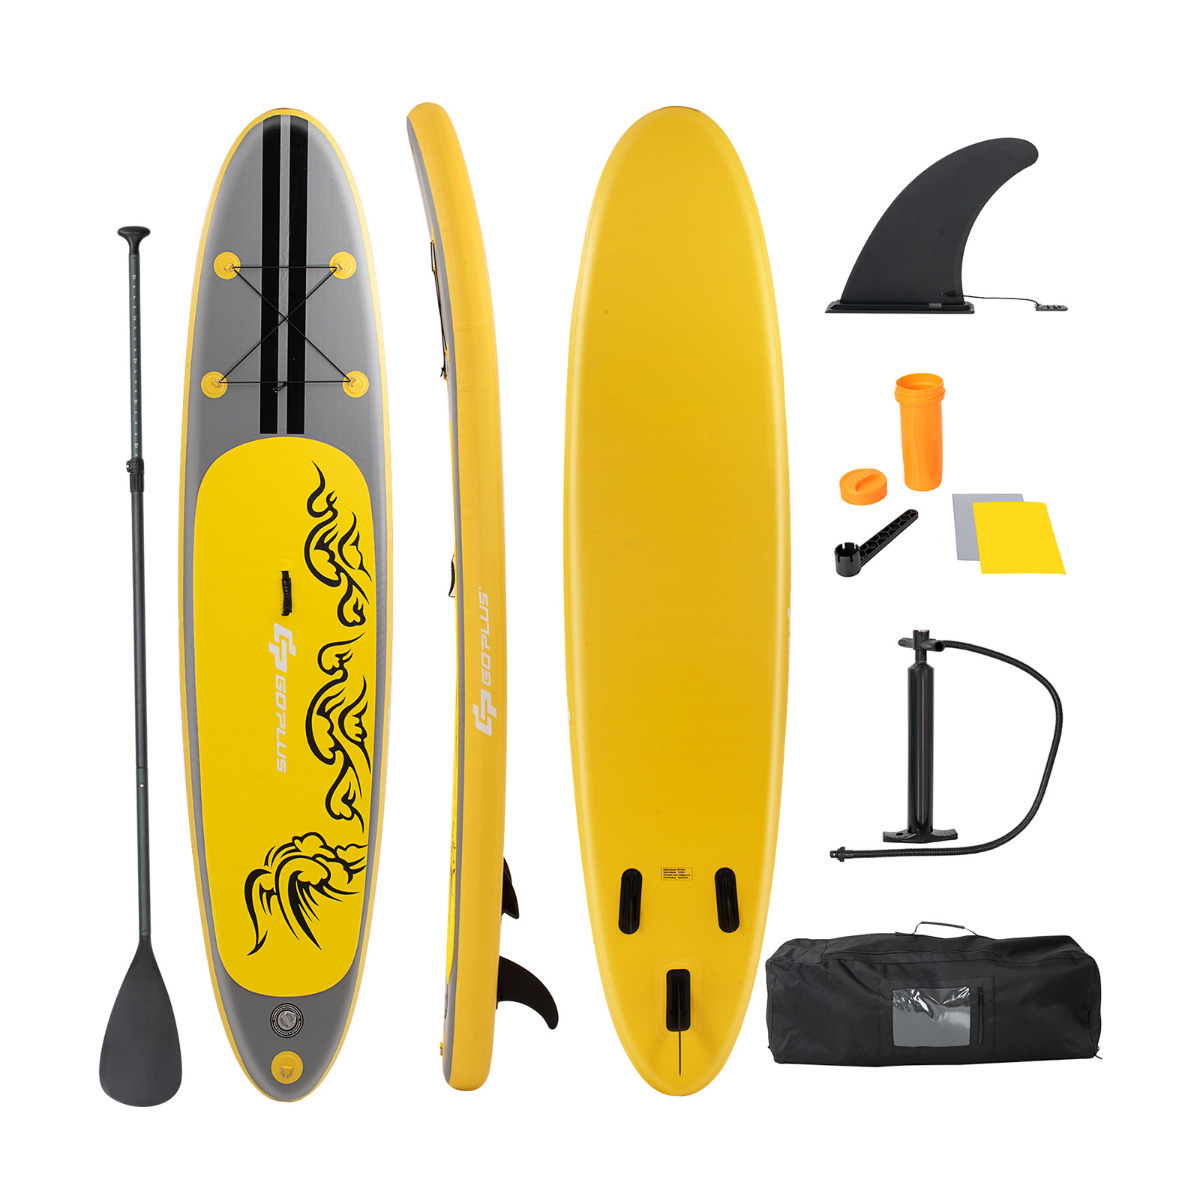 Juego de tabla de paddle surf hinchable fabricado en PVC EVA y